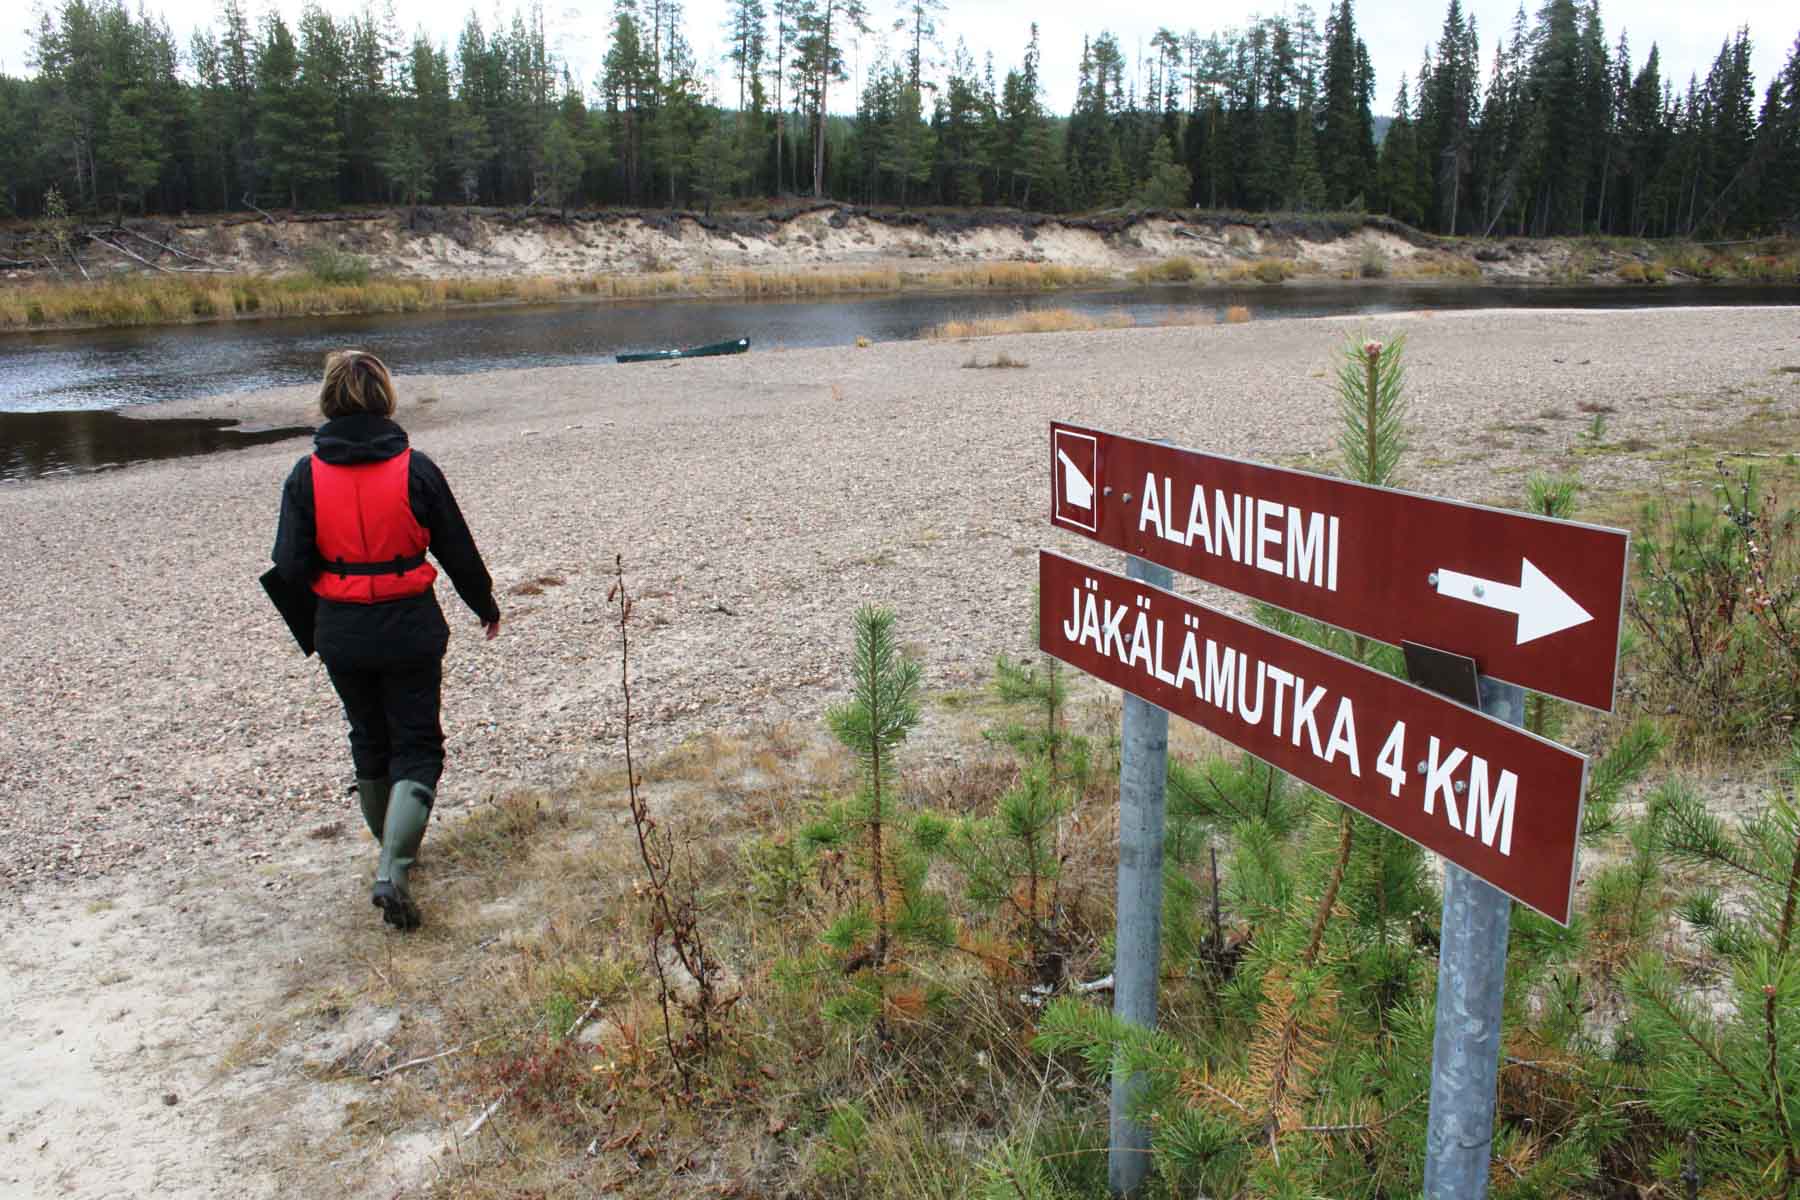 Alaniemestä menee aikaa meloen Jäkälämutkaan reilu puoli tuntia, joten tässä vaiheessa viimeistään kannattaa tilata kyyti.